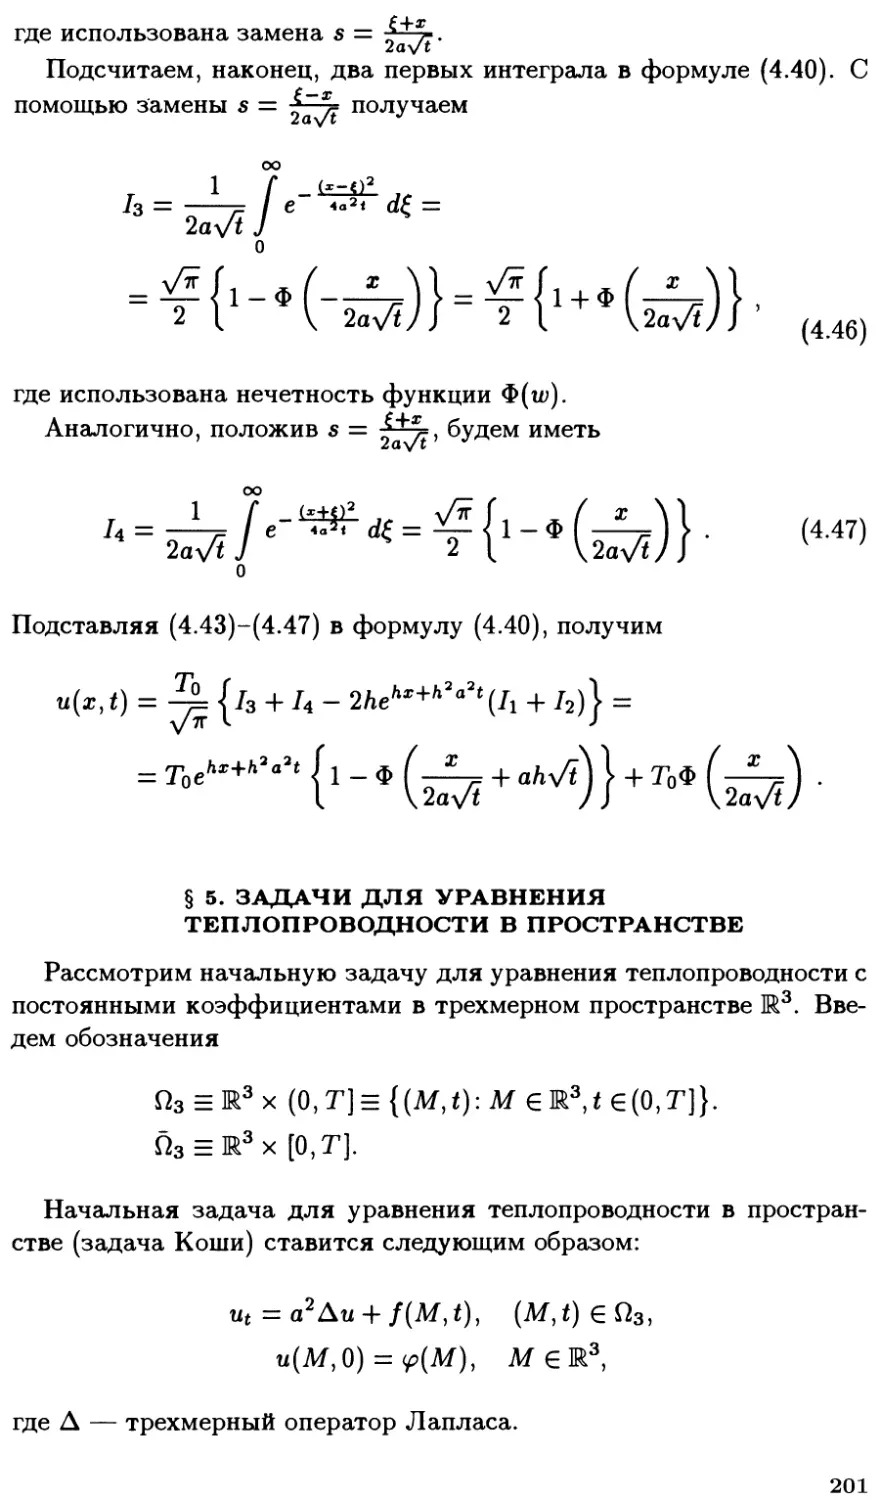 §5. Задачи для уравнения теплопроводности в пространстве